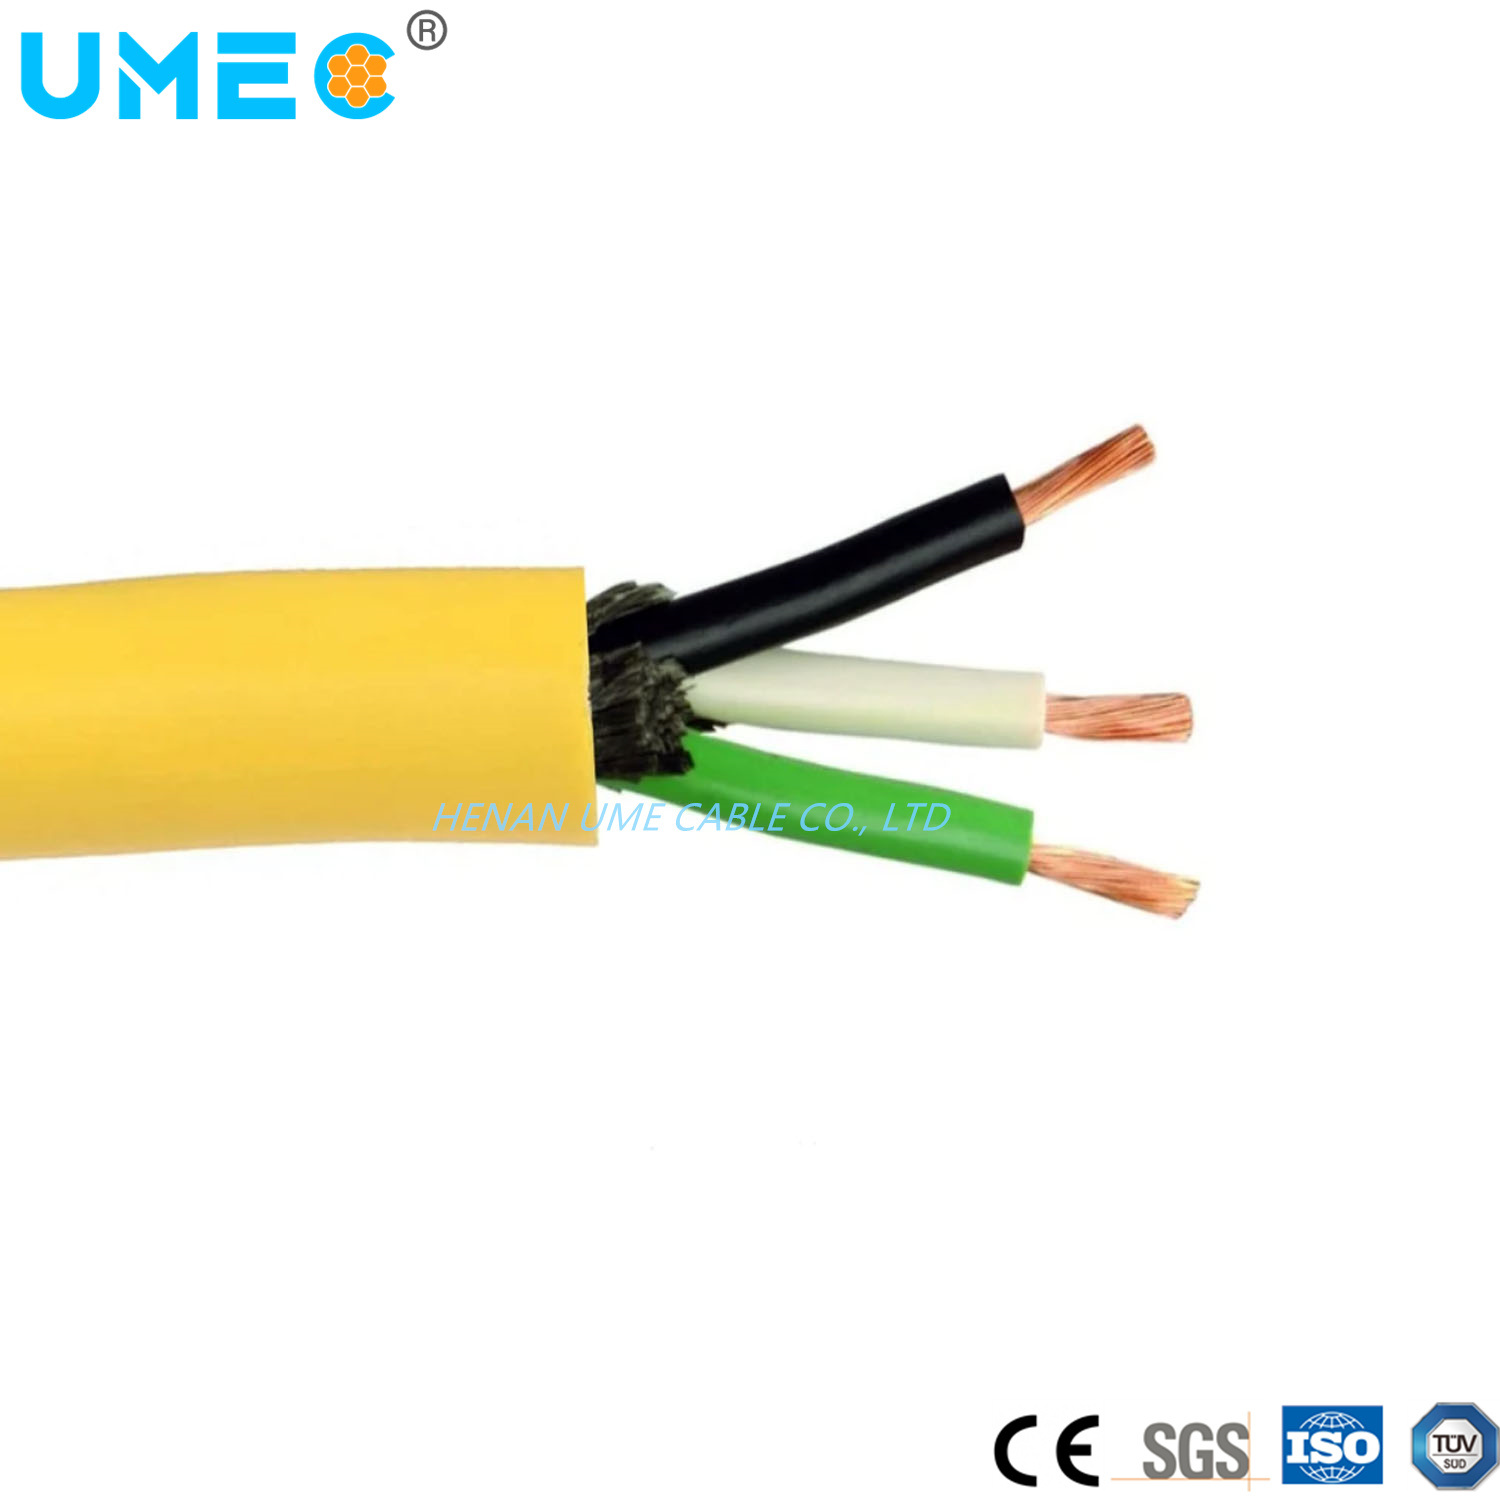 IEC Standard S Sj Sjo Sjoo Sjoow Sjow So Soo Soow Sow Sv Svo Svoo Flexible Rubber Portable Cord Cable